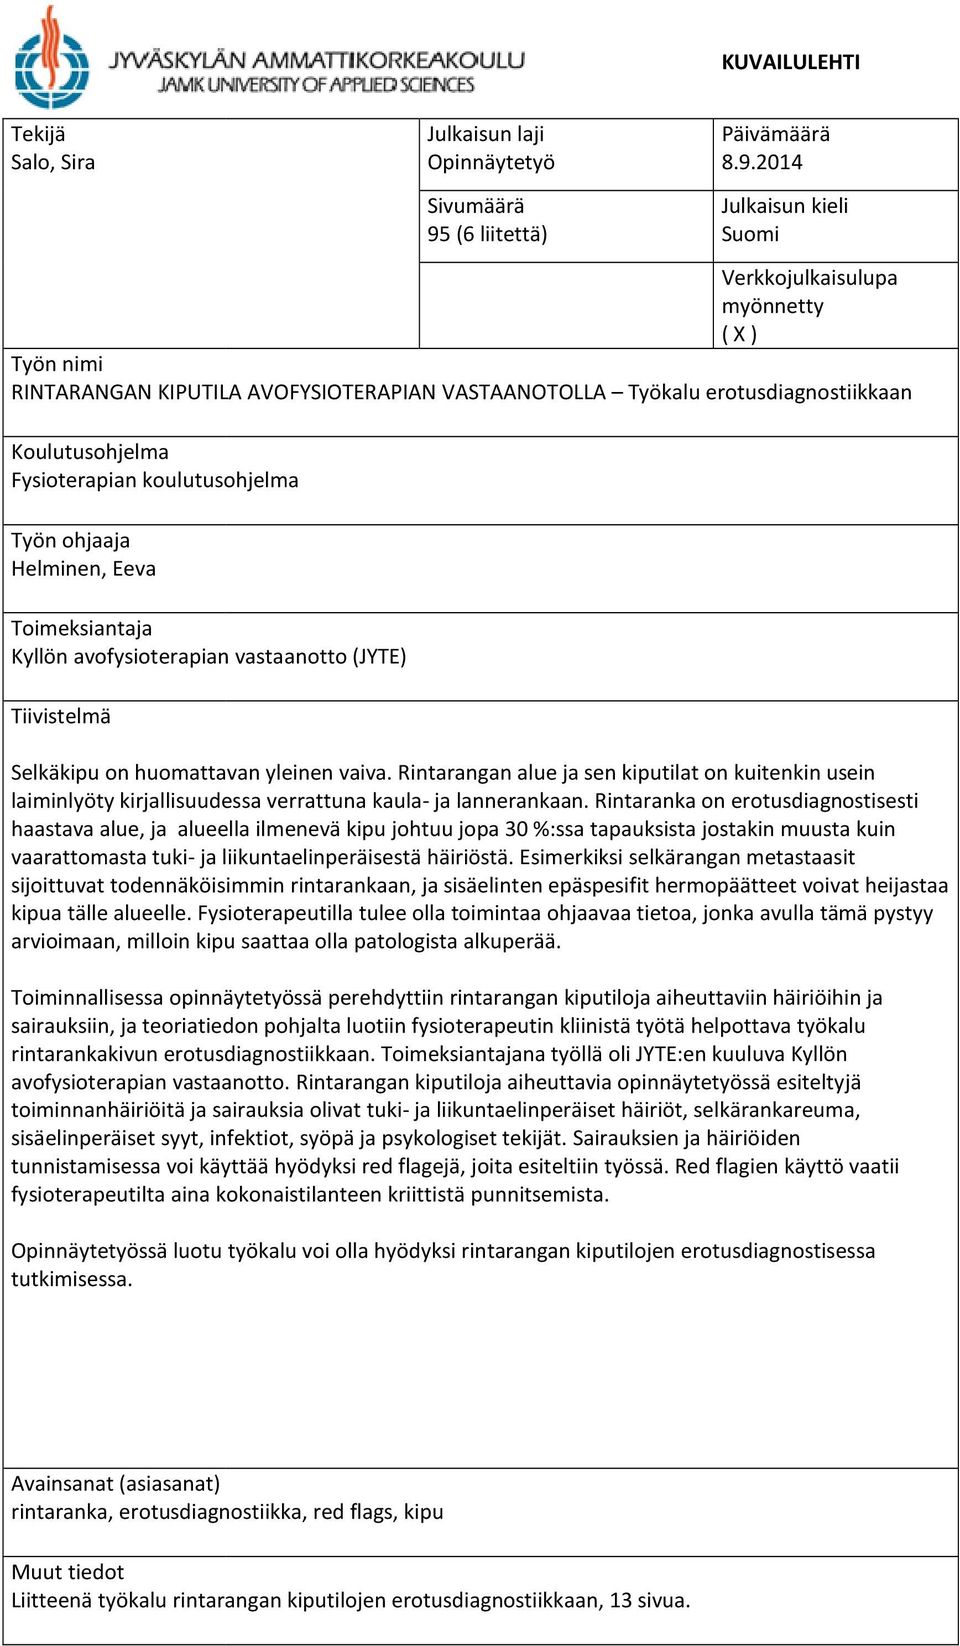 (6 liitettä) Päivämäärä 8.9.2014 Julkaisun kieli Suomi Selkäkipu on huomattavan yleinen vaiva.